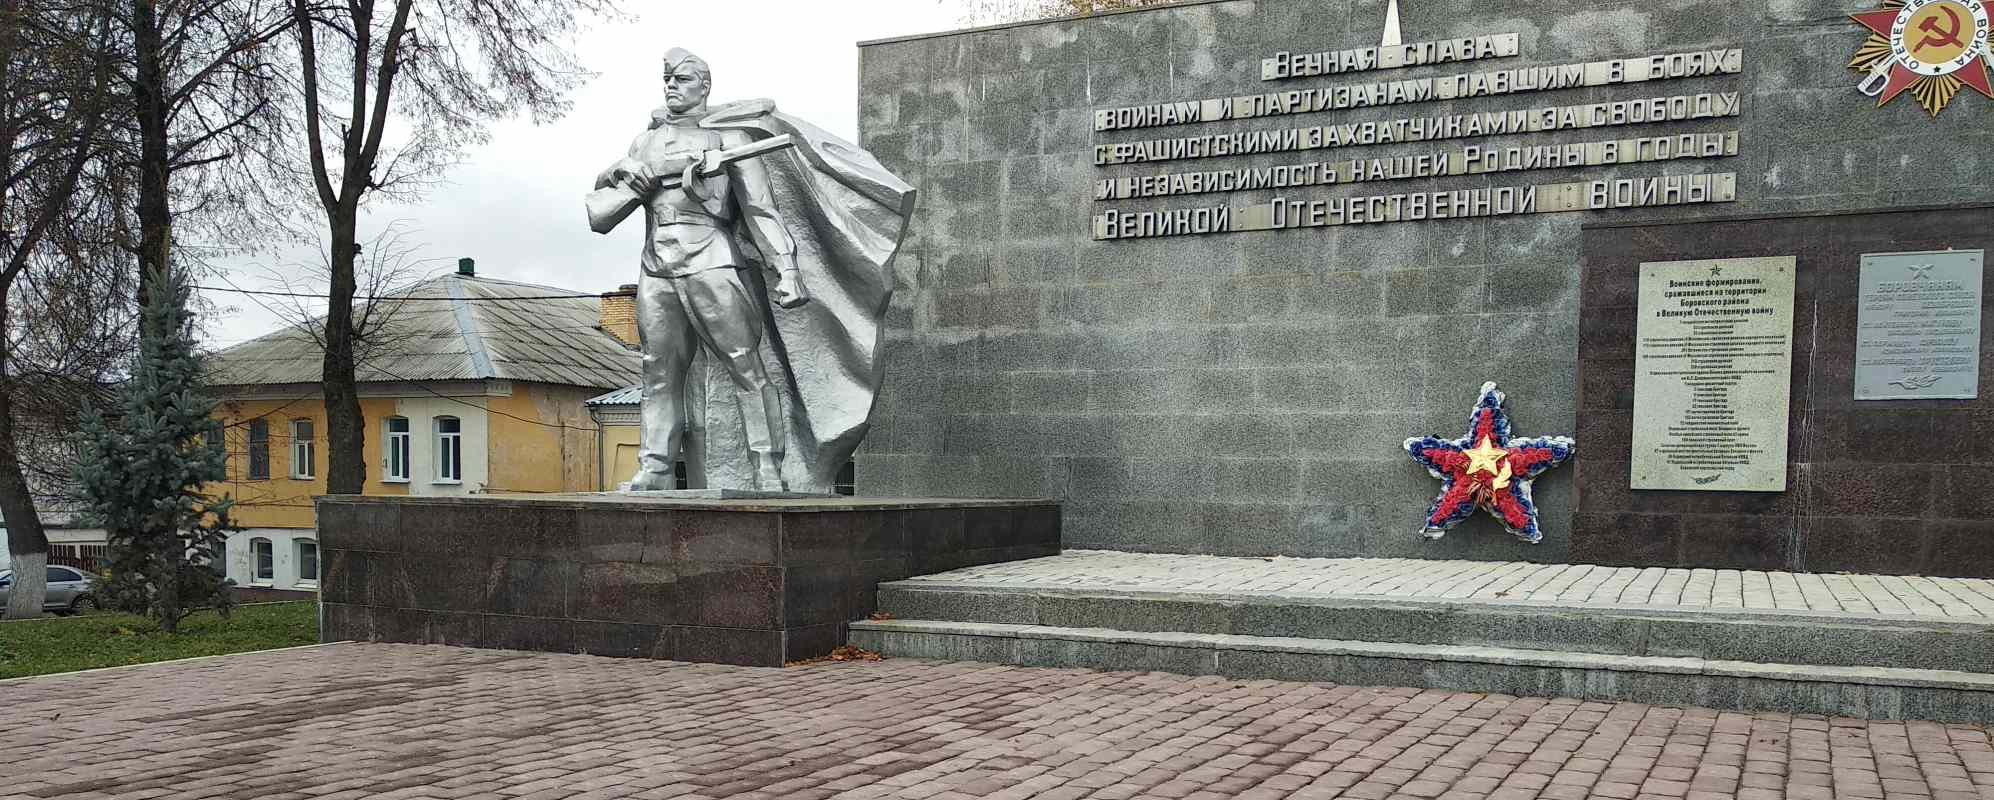 Фотографии достопримечательности Мемориал Великой Отечественной войны